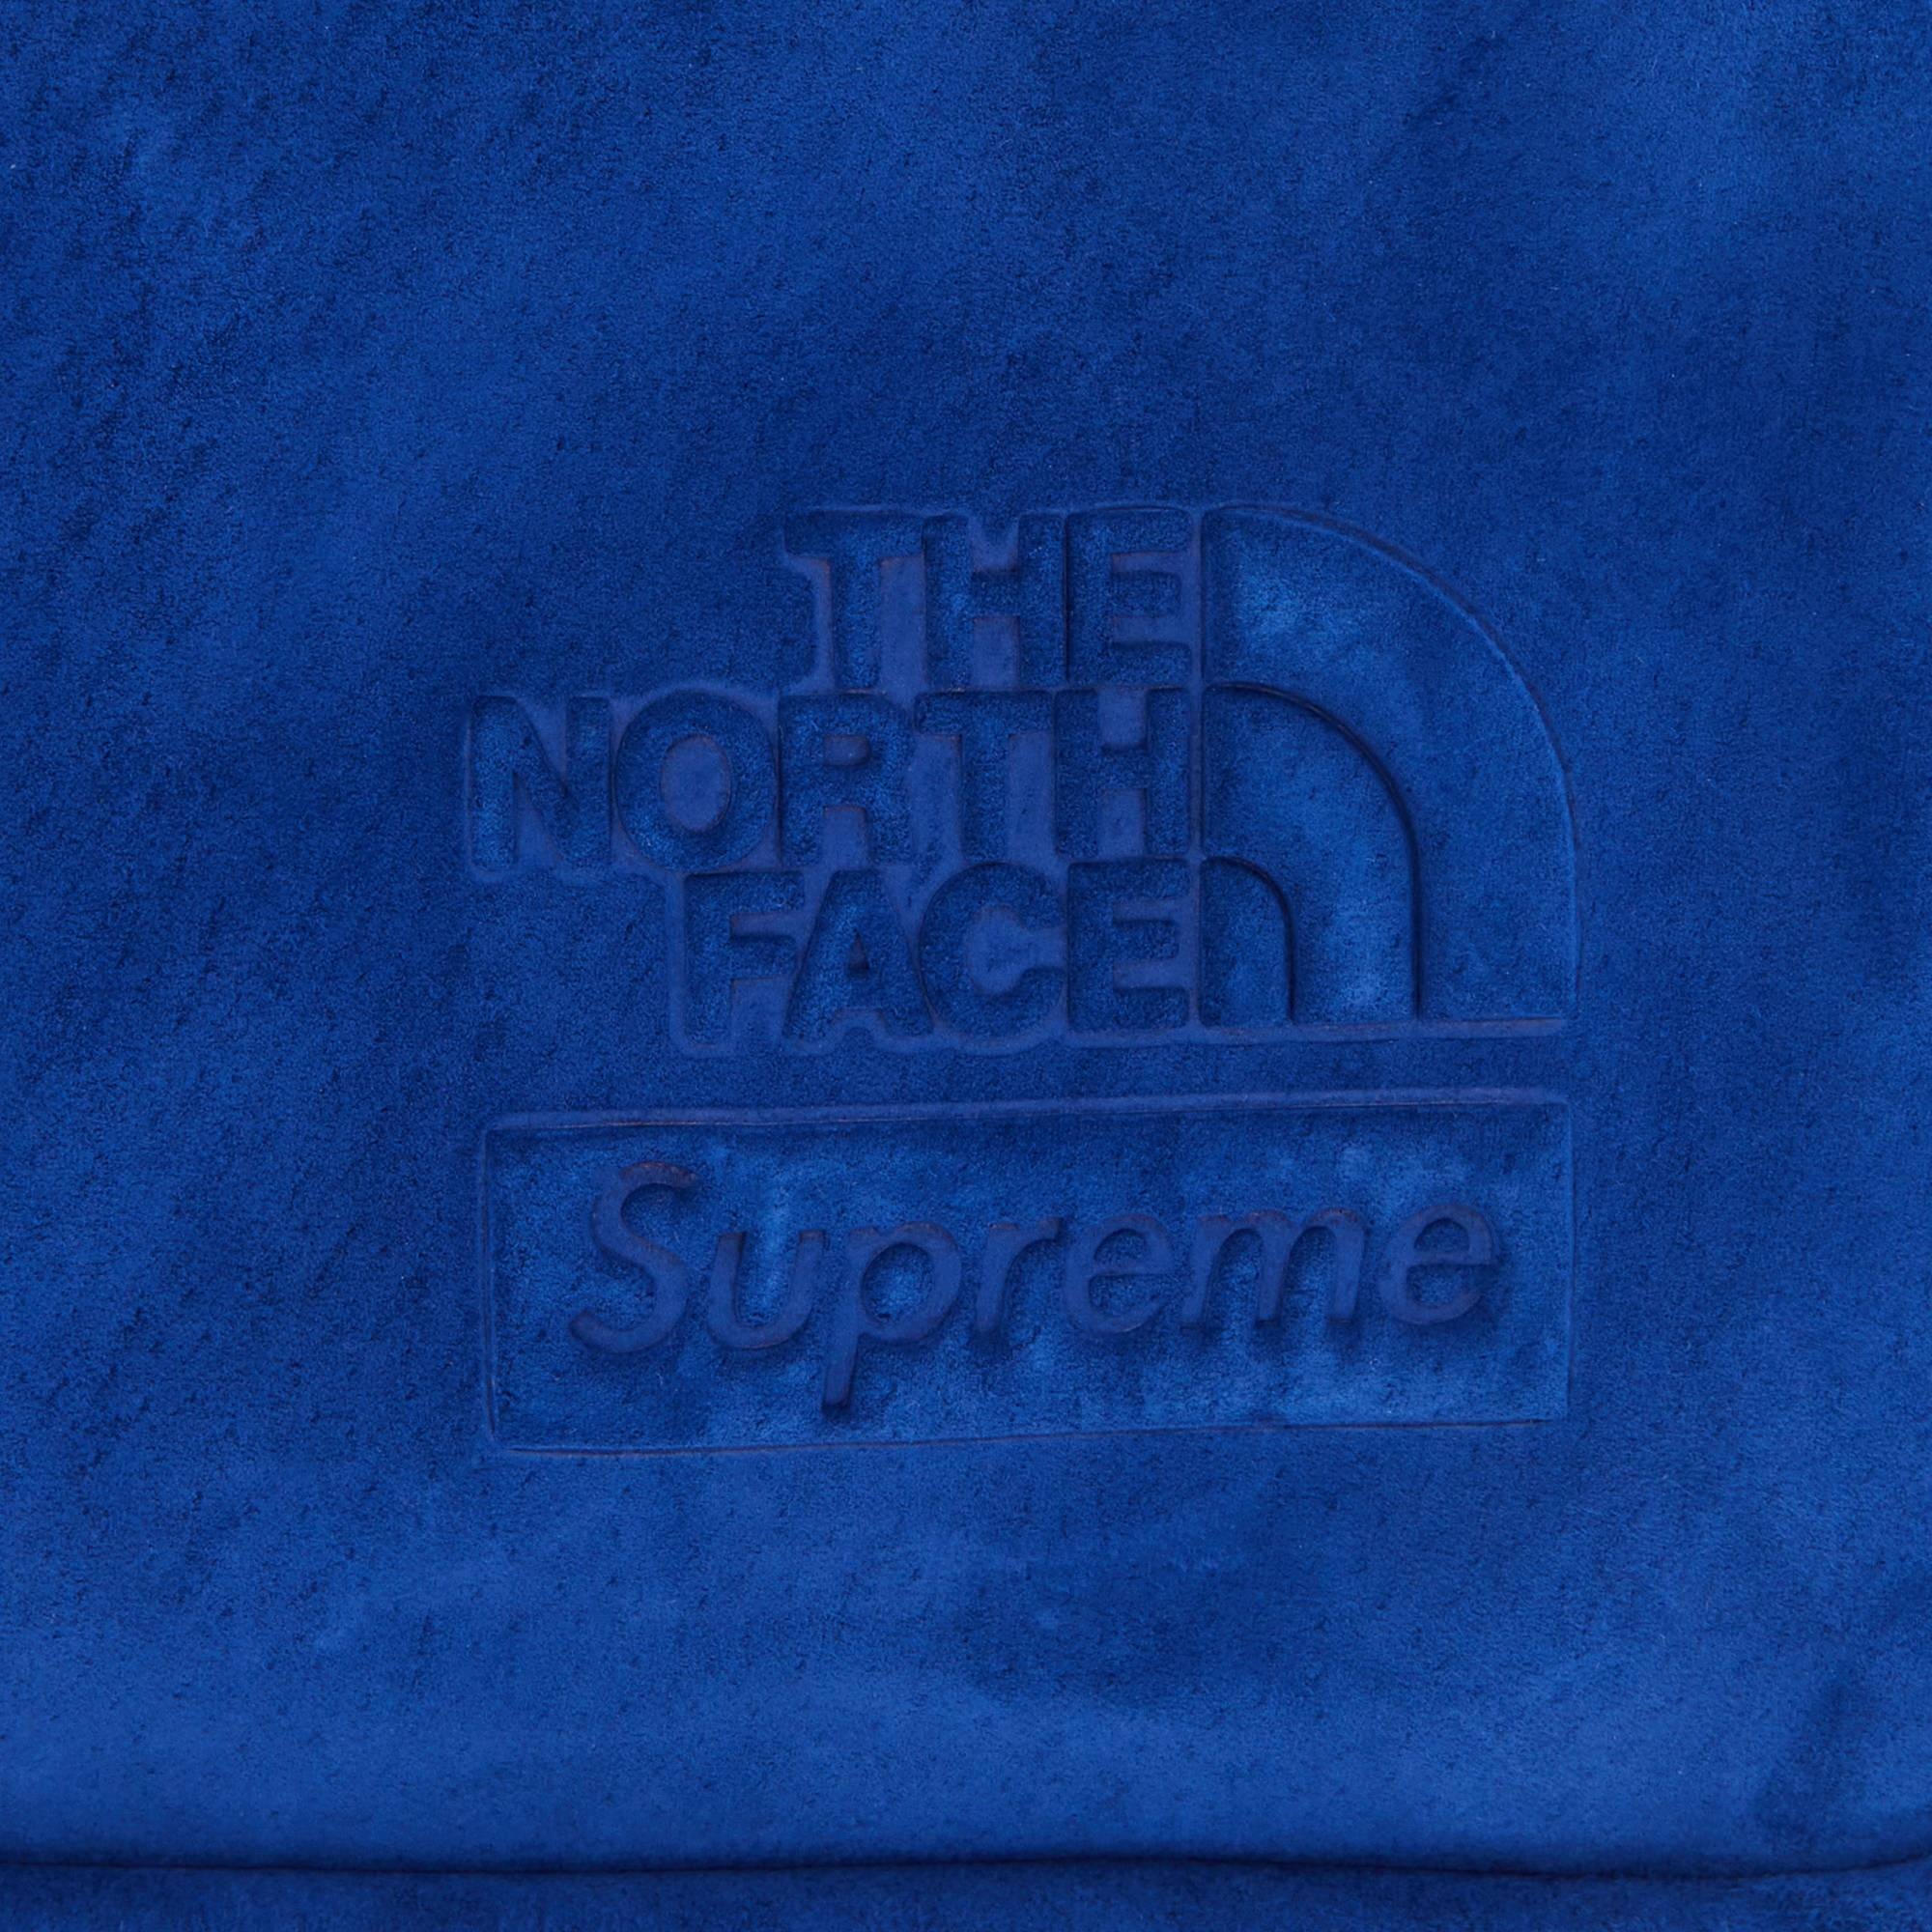 Supreme x The North Face Suede Shoulder Bag 'Blue'